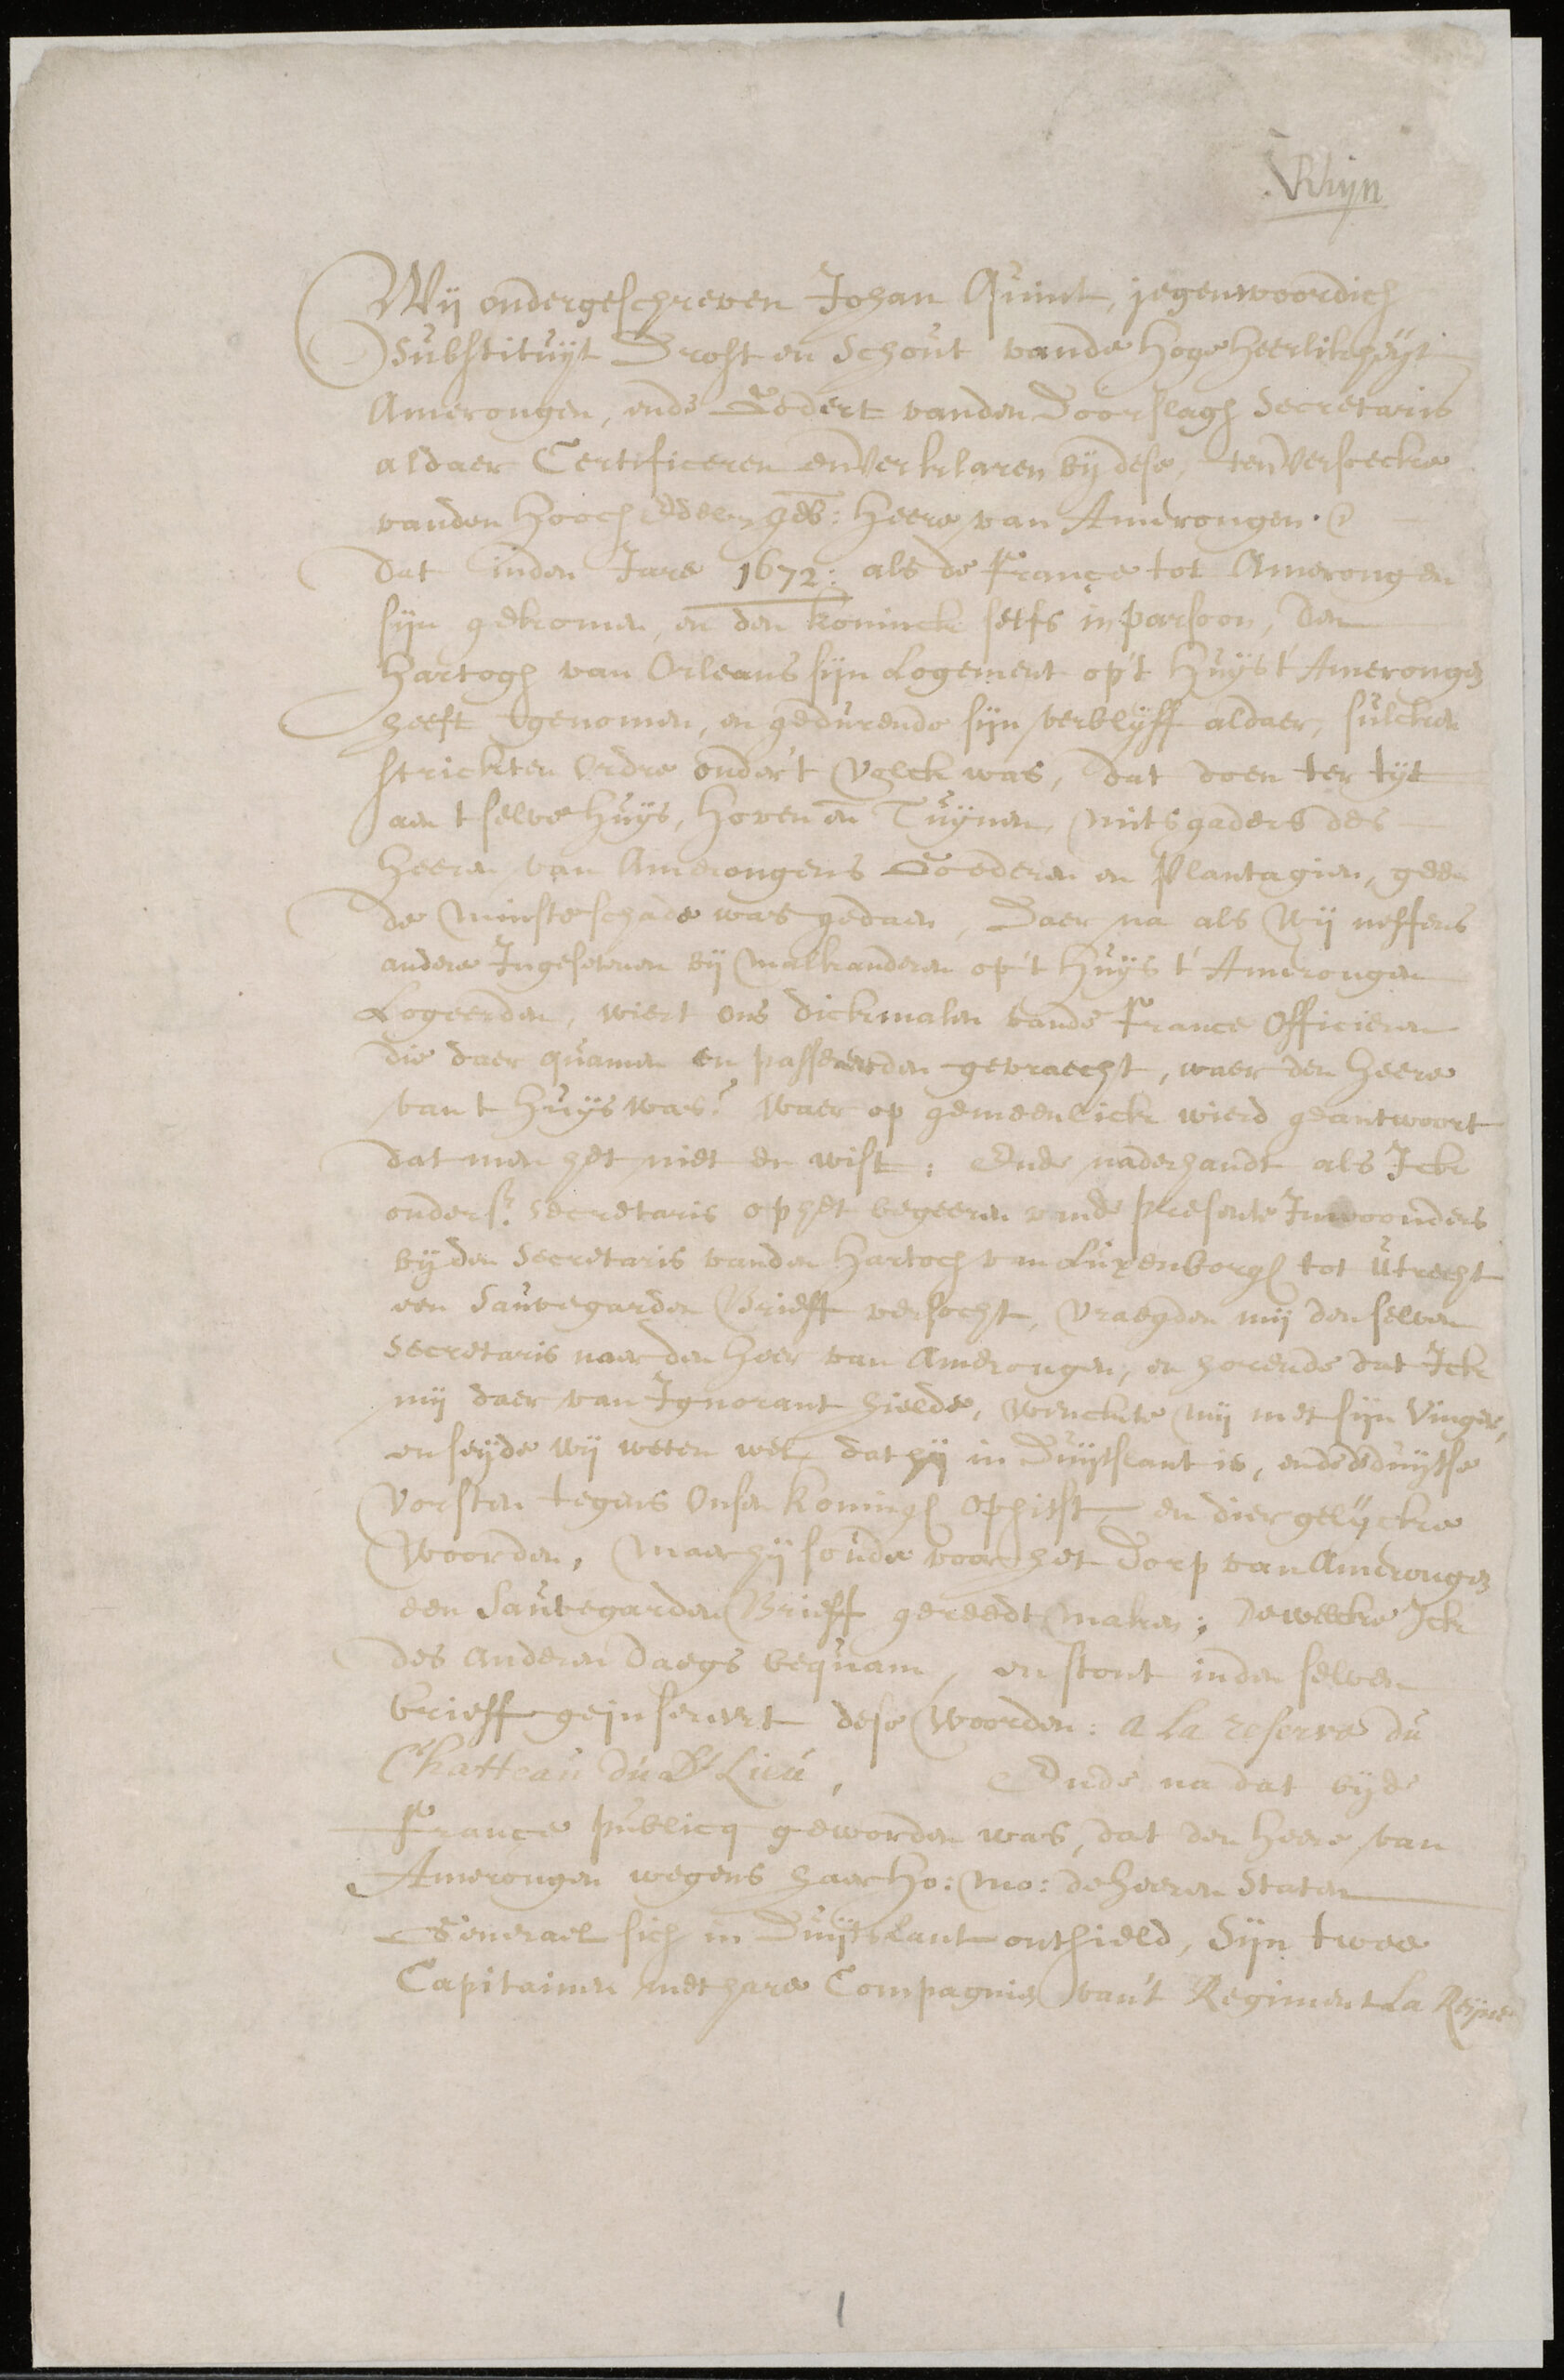 Verklaring door Johan Quint, substituut drost en schout en Godert van den Doorslagh, secretaris van het gerecht, over de plundering en verwoesting van het kasteel door de Franse troepen in 1672, 1675